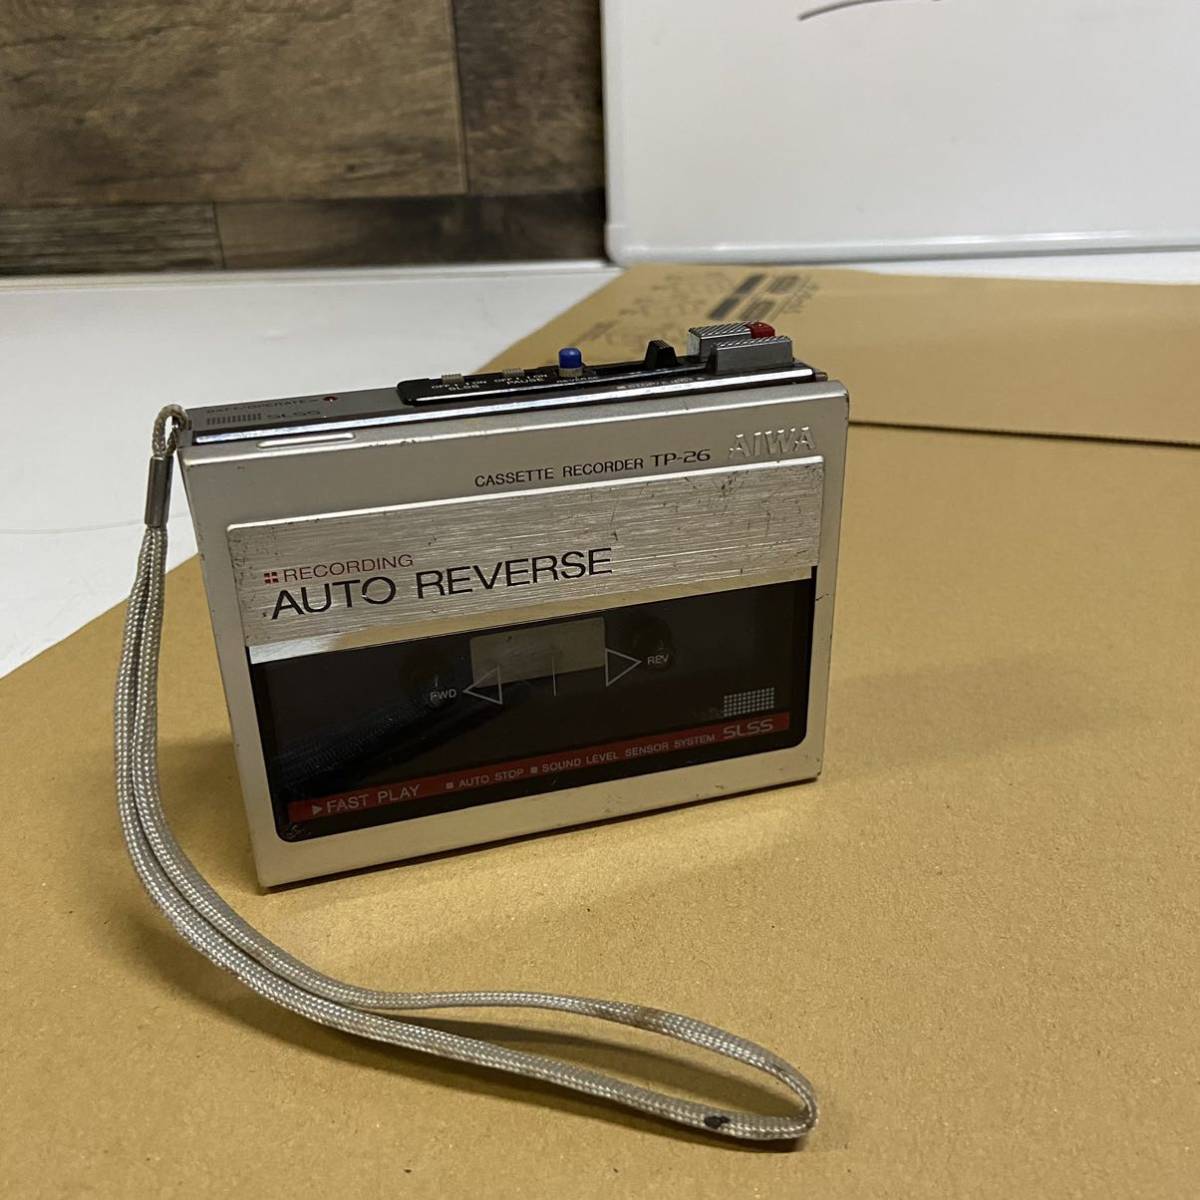 AIWA アイワ ポータブル カセットレコーダー TP-26 カセットプレーヤー RECORDING AUTO REVERSE レトロ 中古_画像1